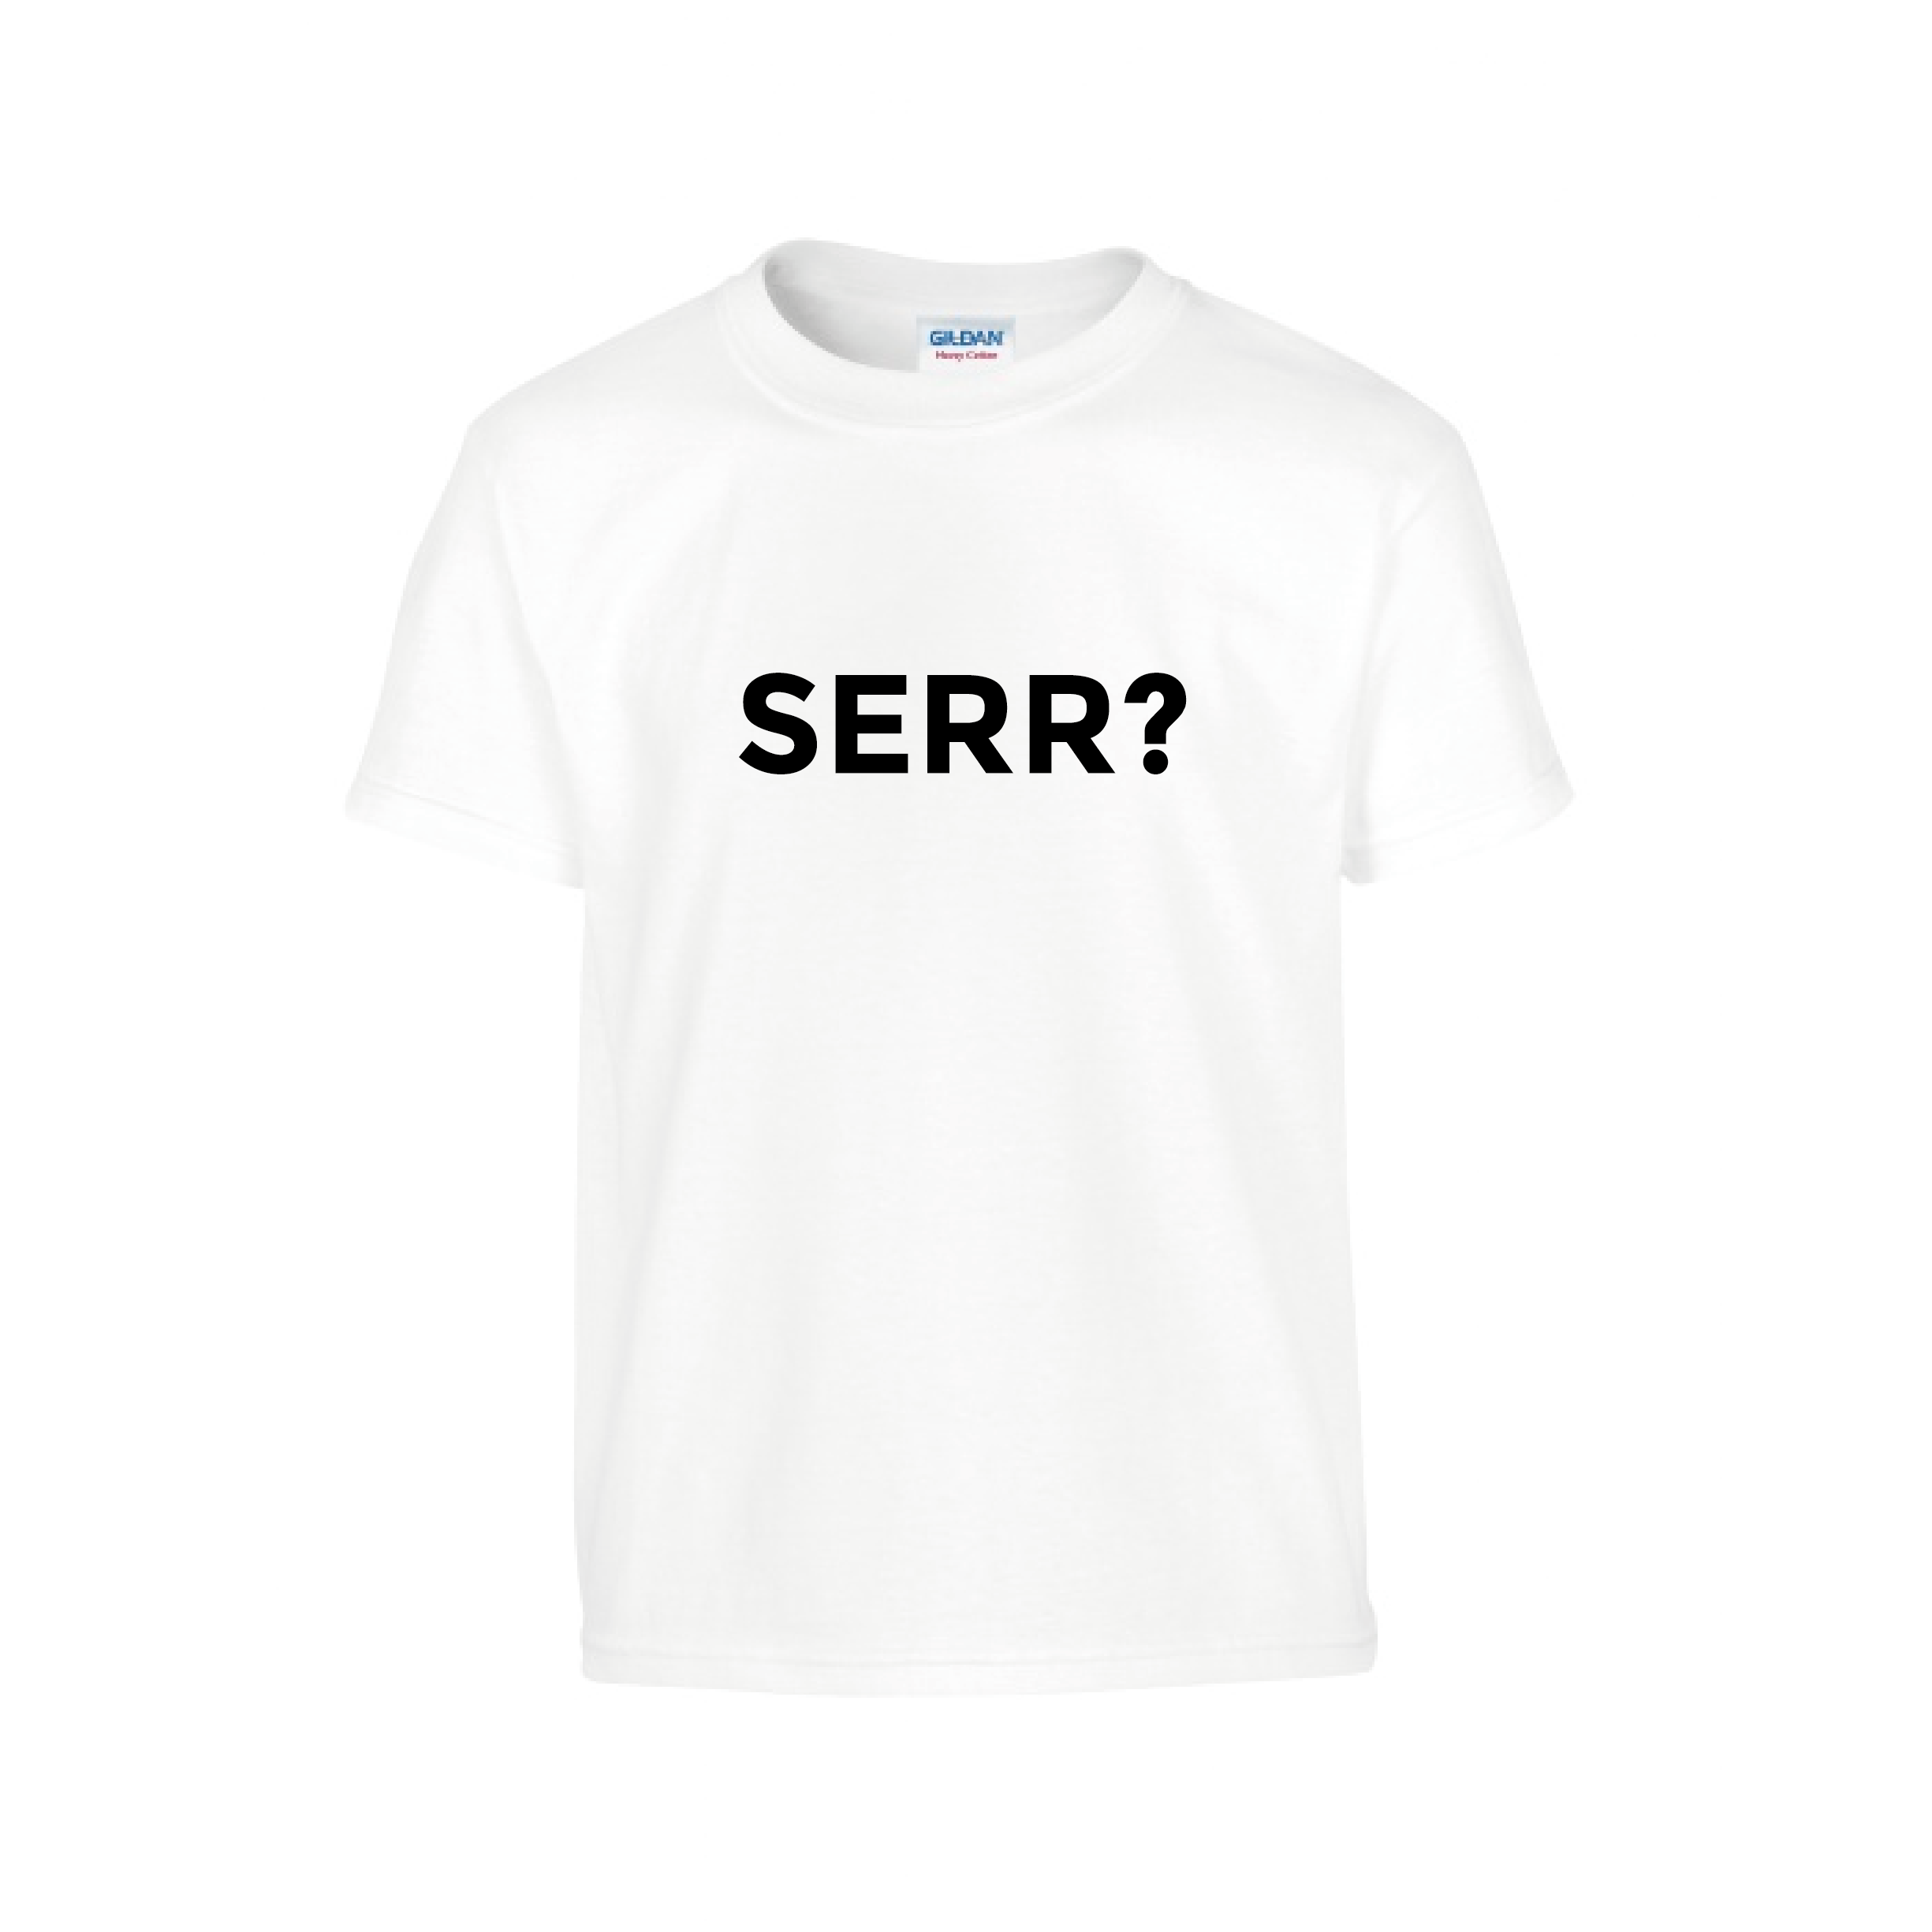 Serr t-shirt